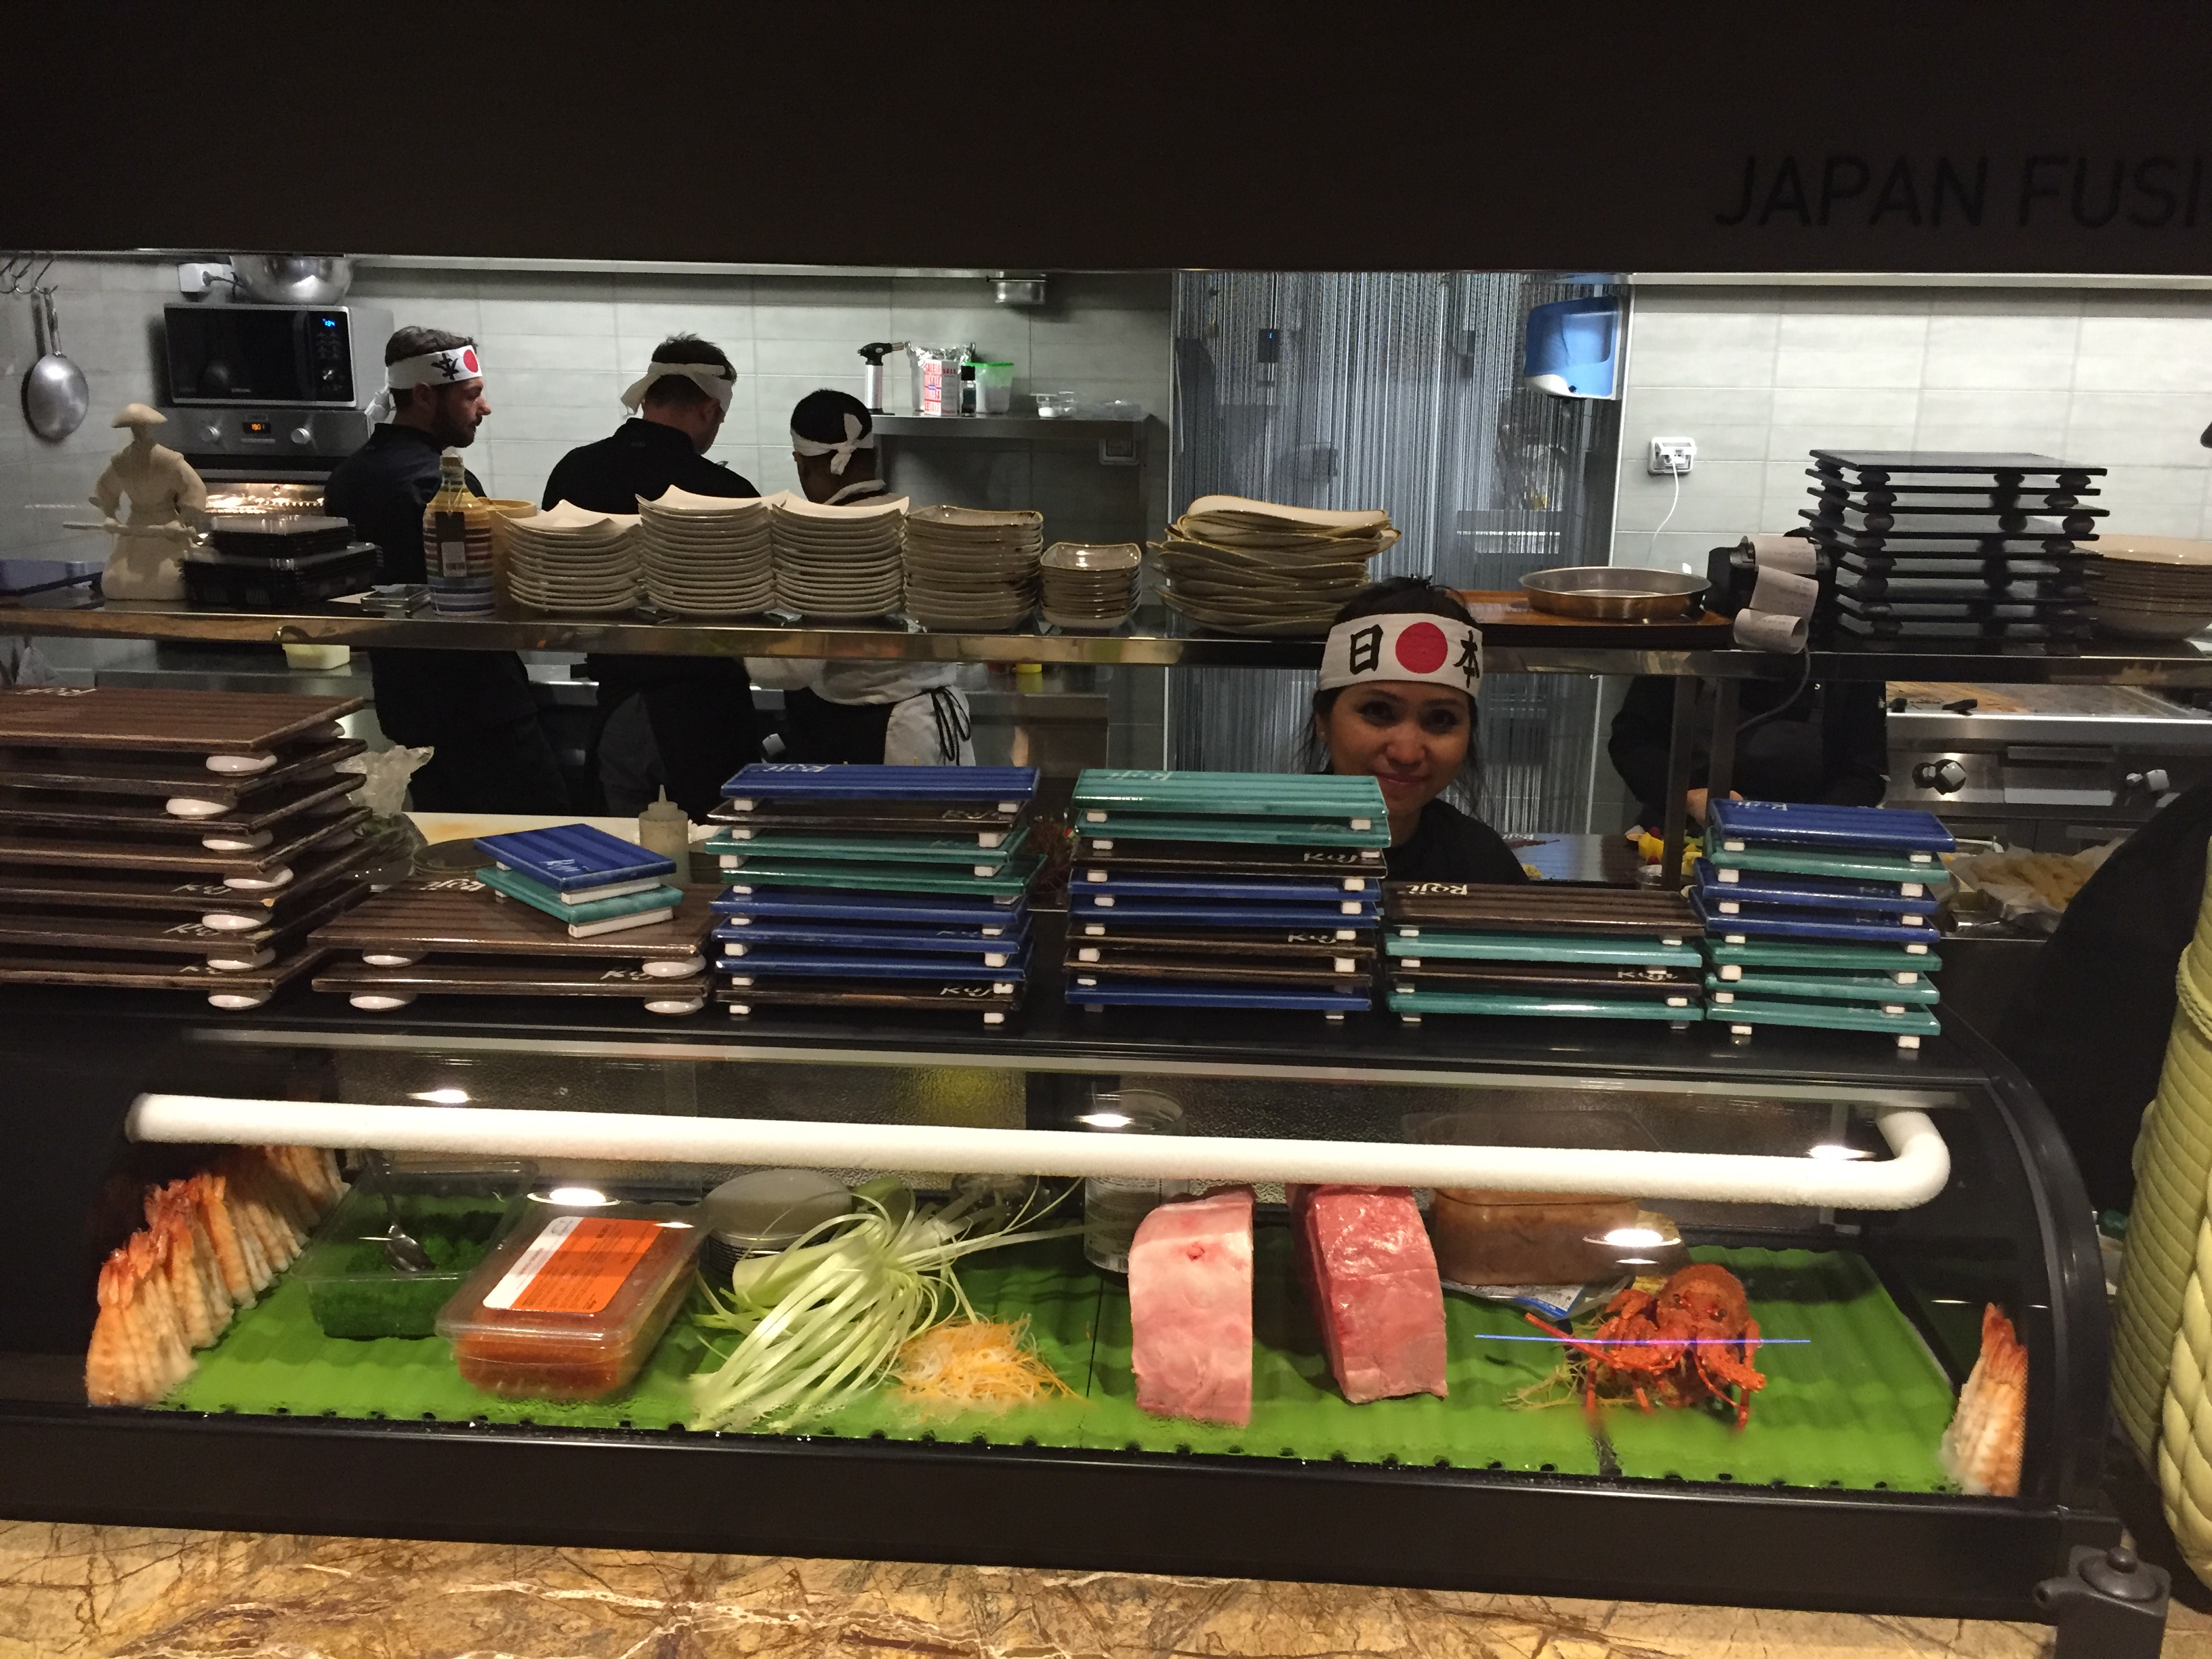 A Nola le nozze della Dieta Mediterranea con la cucina Giapponese al ROJI Japan Fusion - Sapori News 